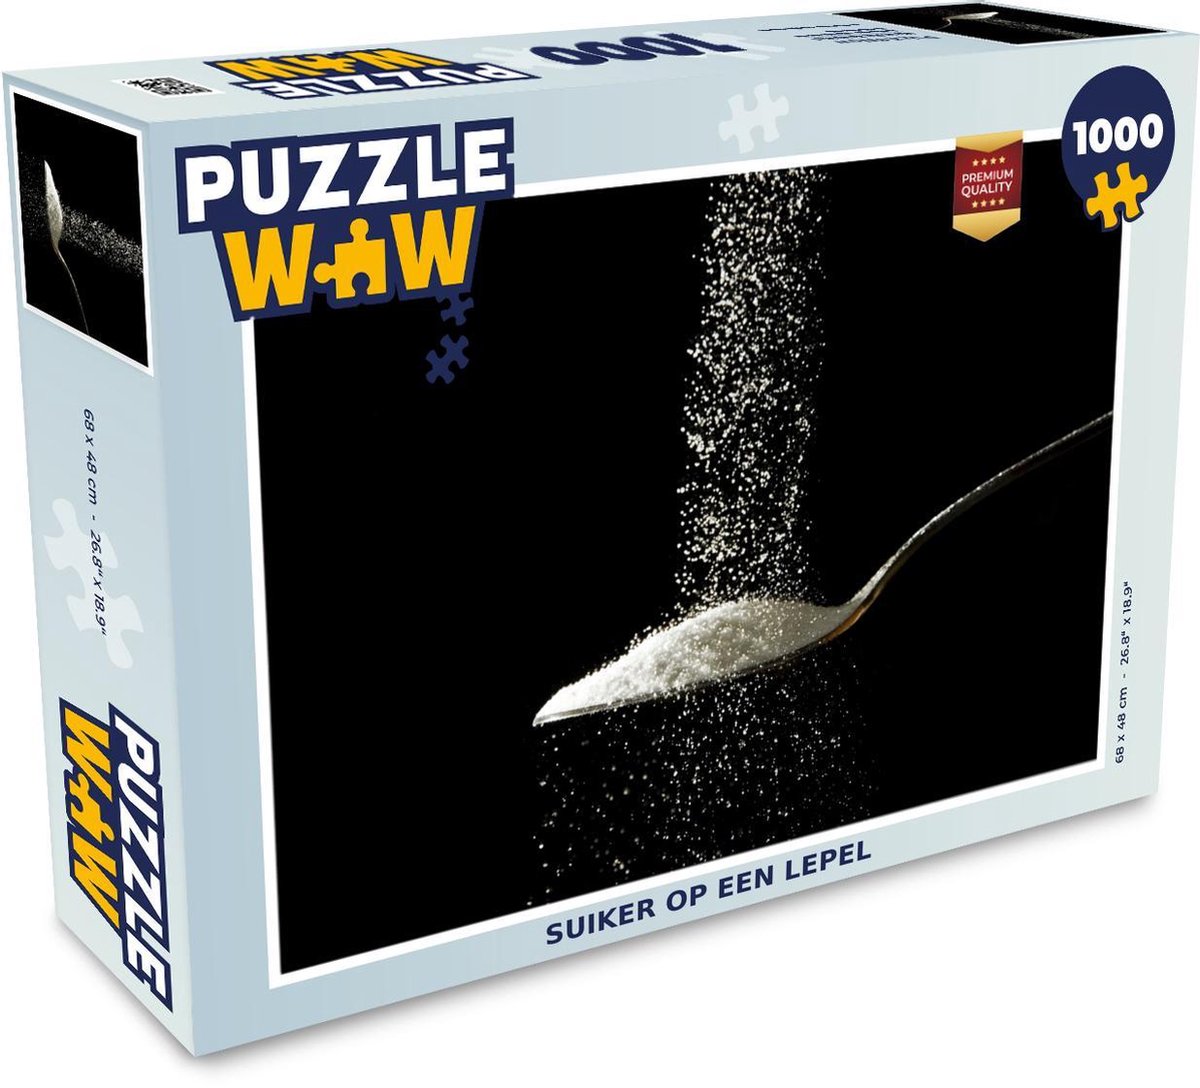 Aardappelen filter vieren Puzzel Suiker op een lepel - Legpuzzel - Puzzel 1000 stukjes volwassenen |  bol.com